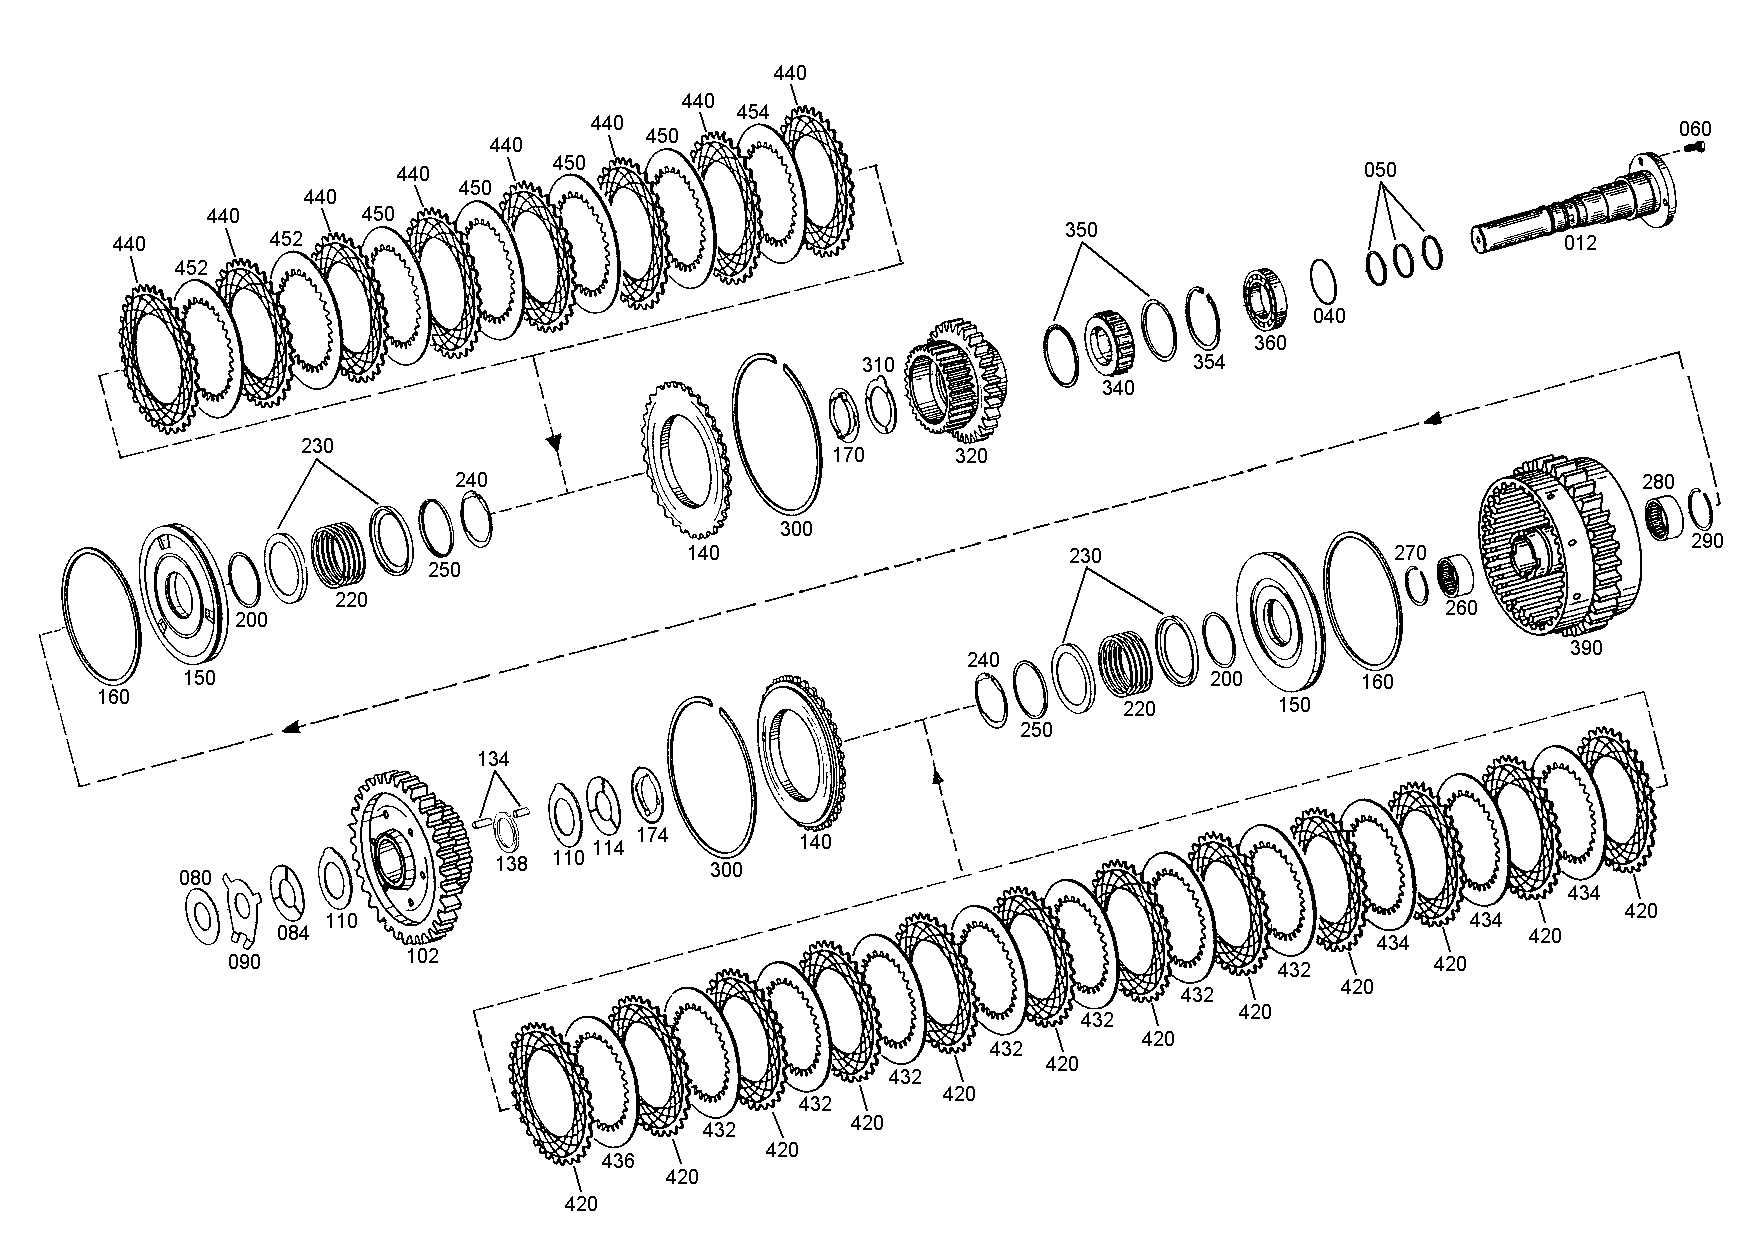 drawing for NACCO-IRV 1390850 - ANGLE RING (figure 3)